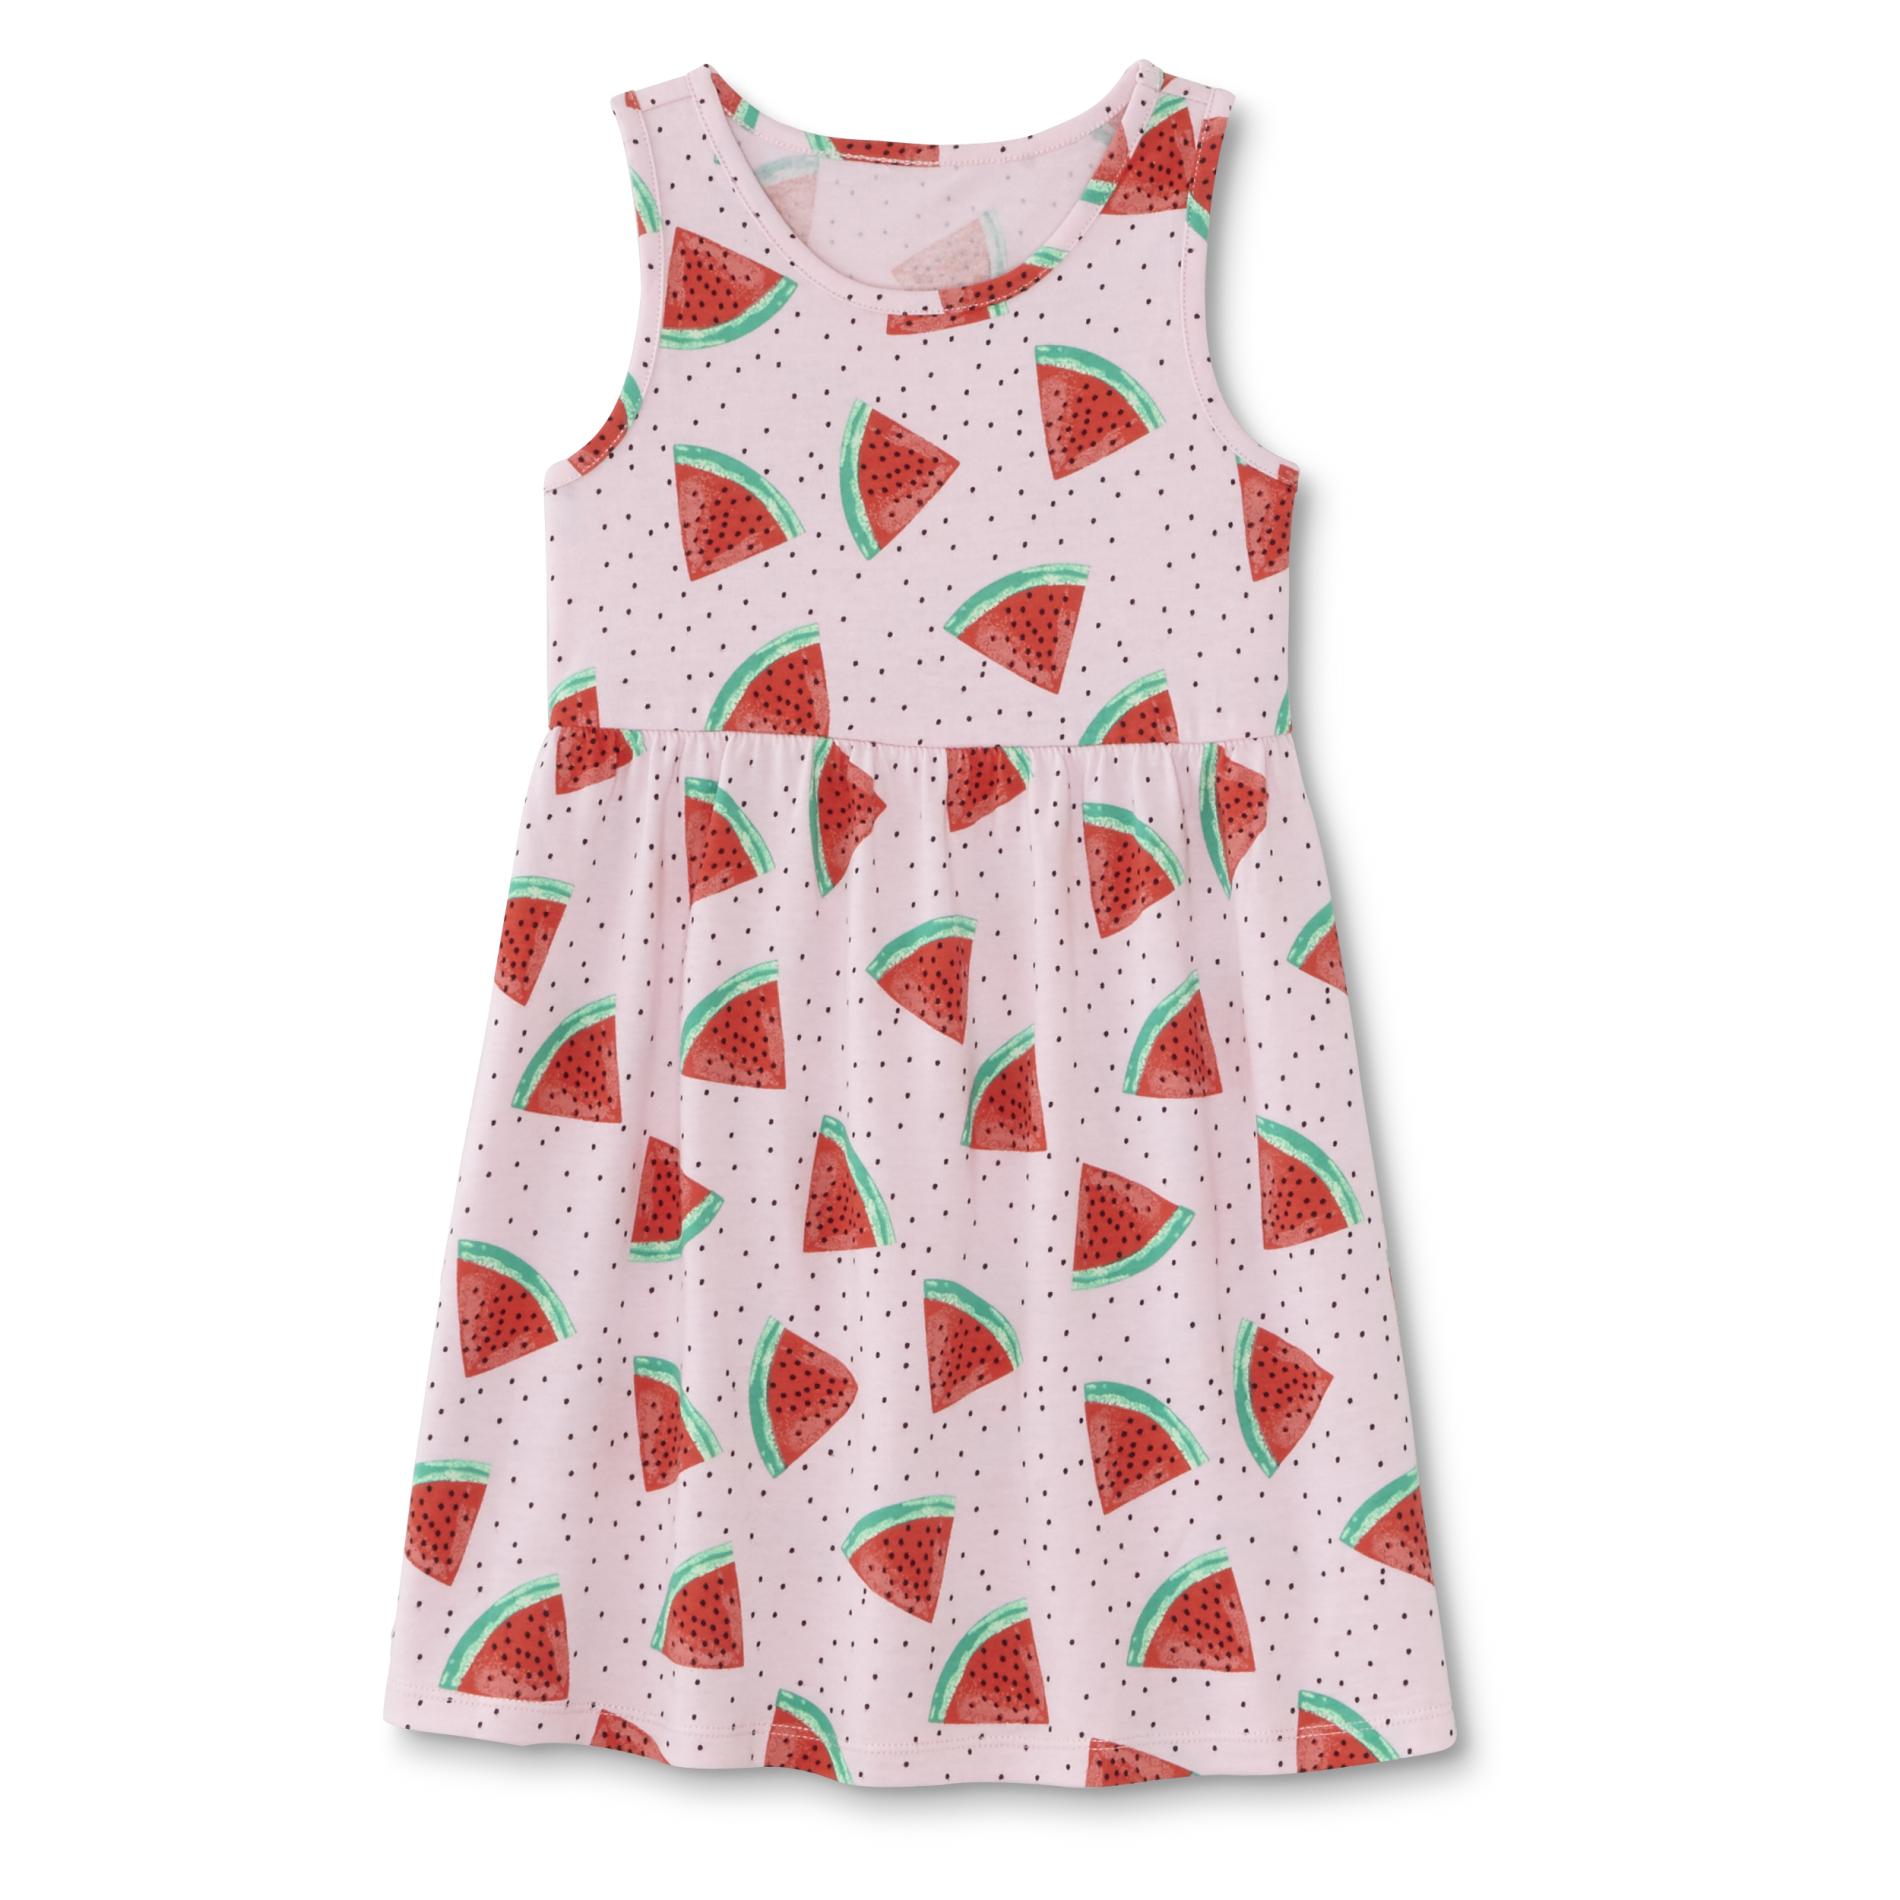 Toughskins Girl's Tank Dress - Watermelon